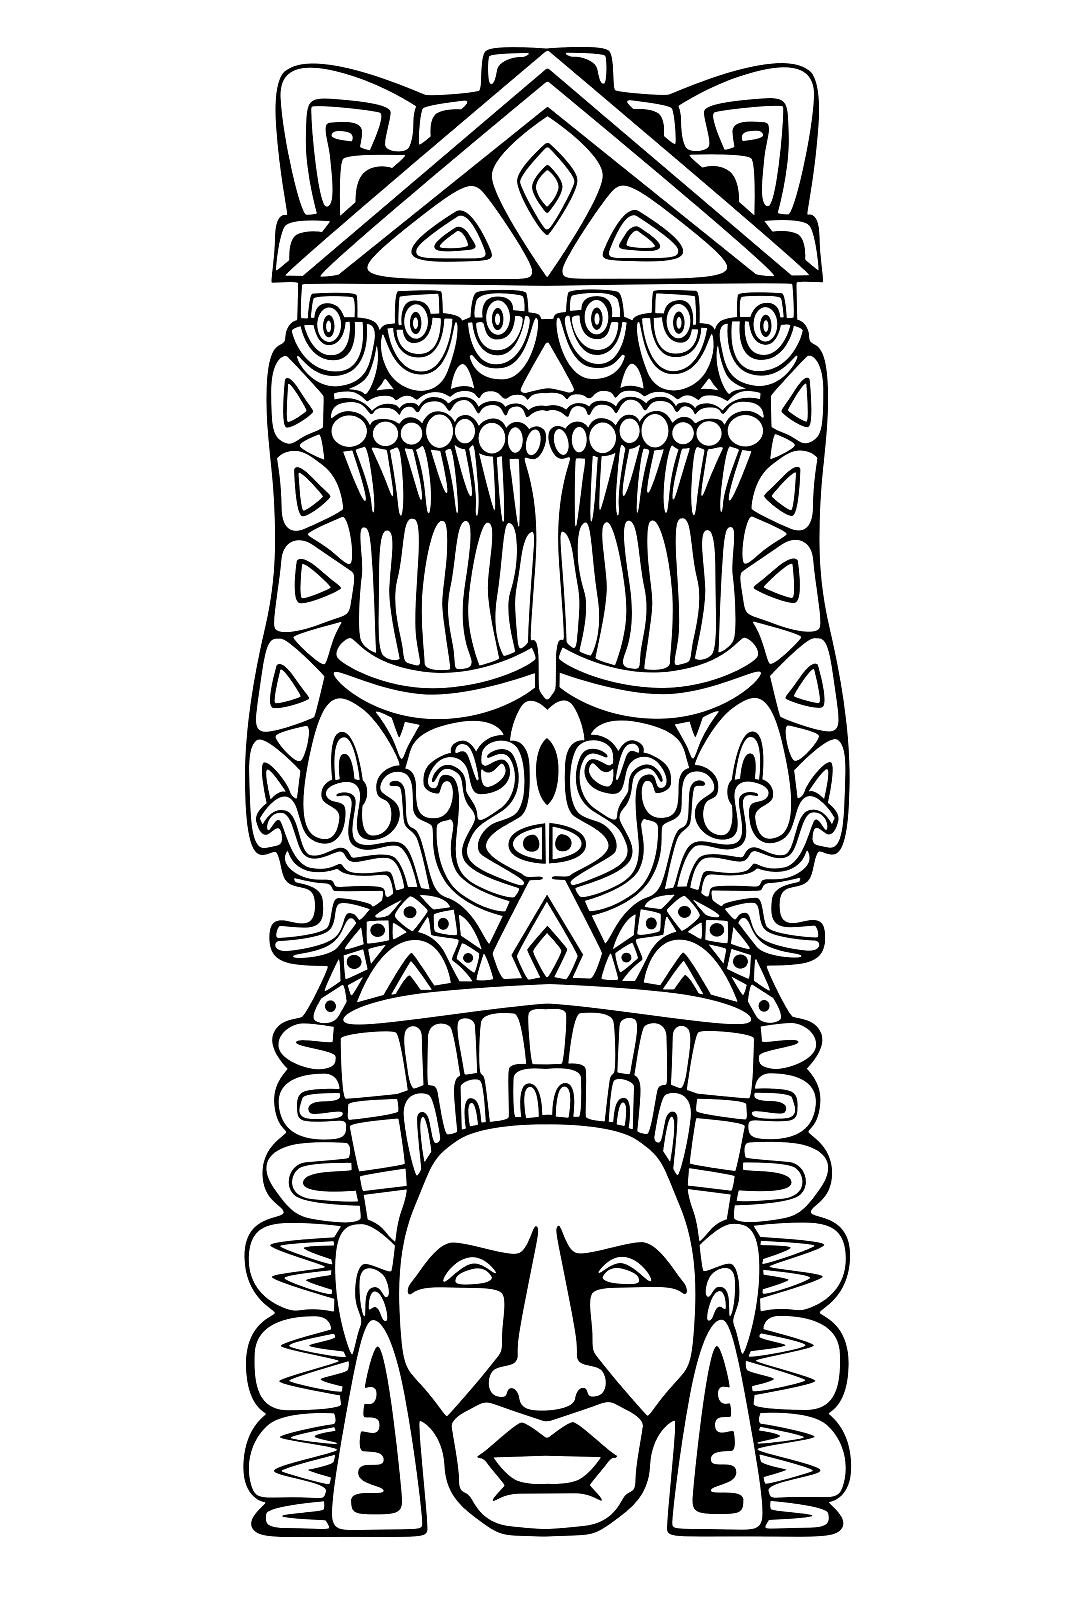 Desenhos simples para colorir gratuitos para crianças de Maias, astecas e incas, Artista : Rocich   Fonte : 123rf